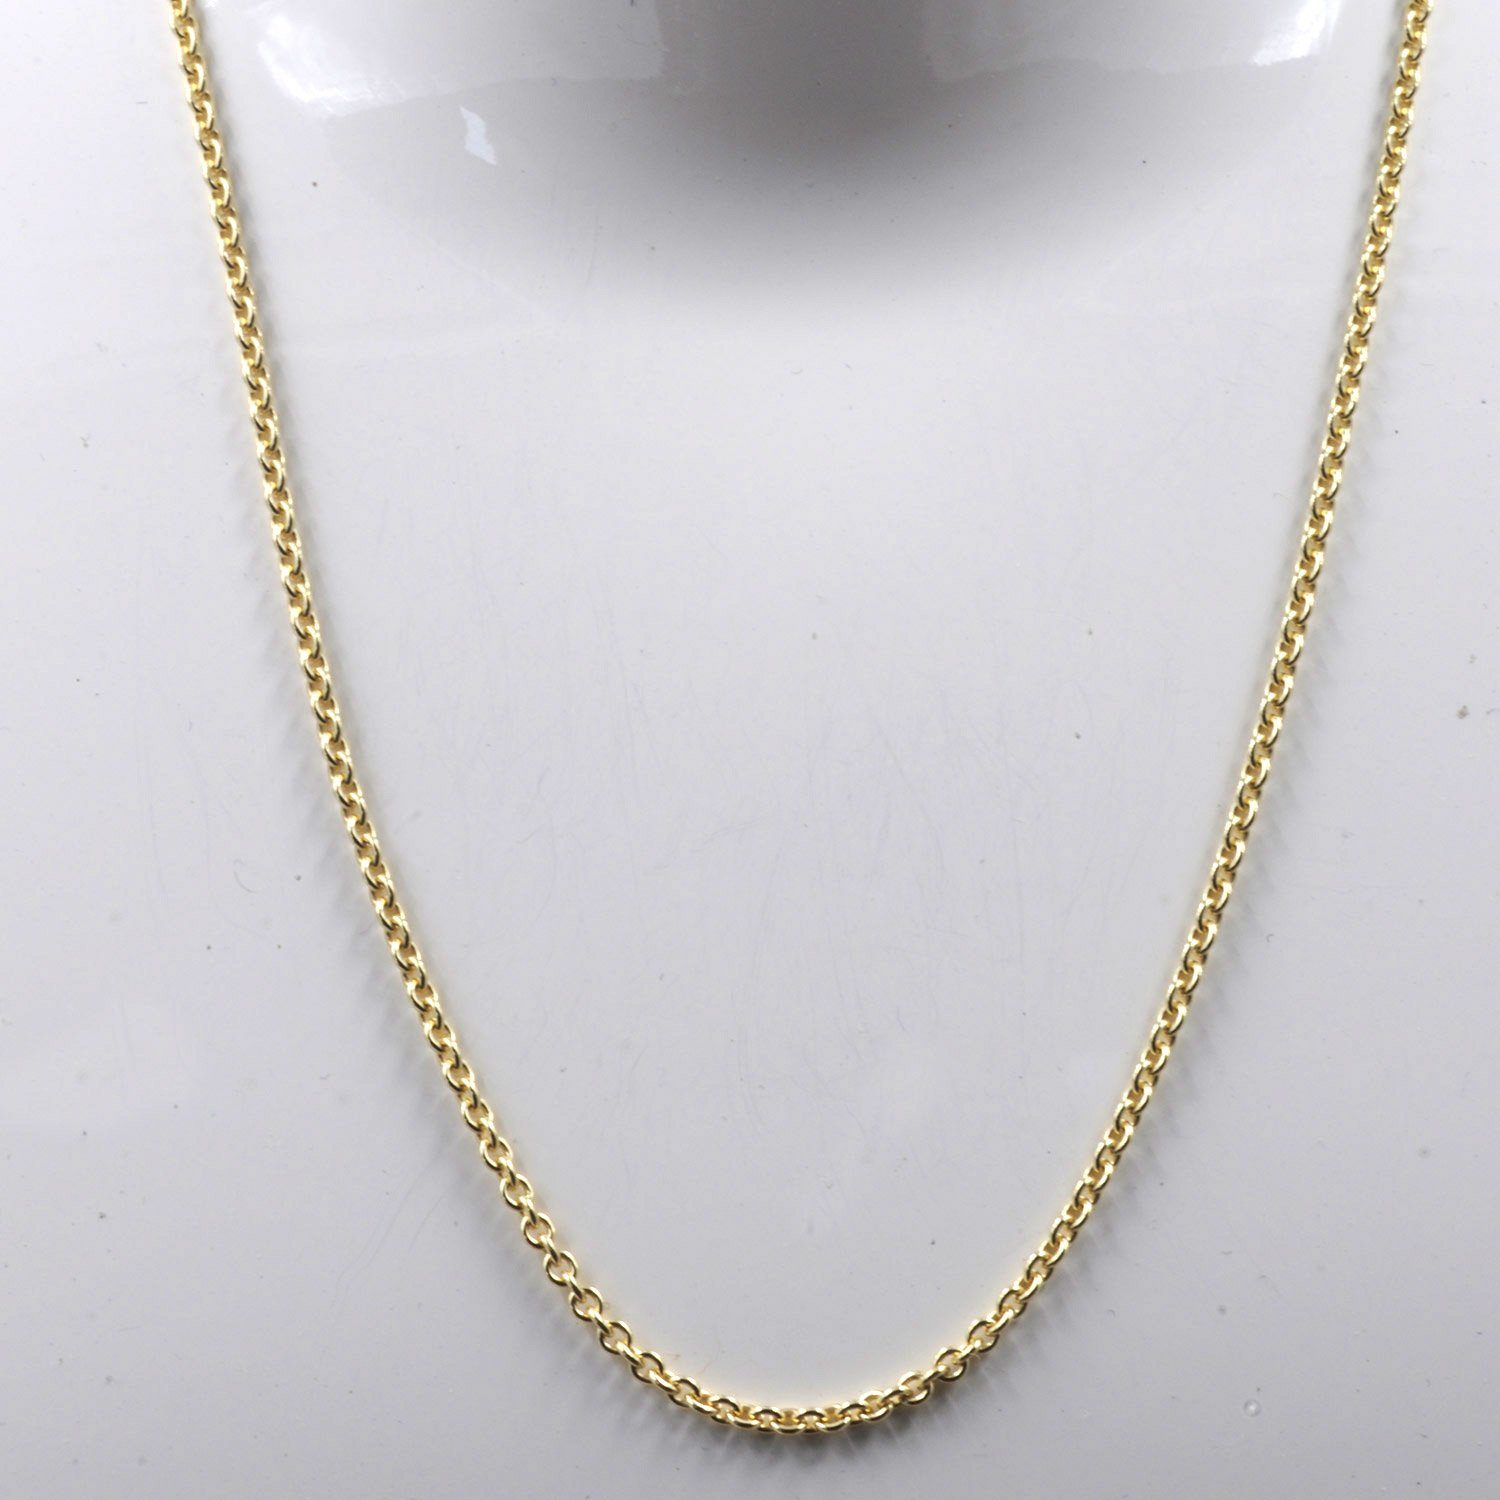 Herren Schmuck HOPLO Goldkette 2,0 mm 45 cm 333 - 8 Karat Gold Halskette Ankerkette rund massiv Gold hochwertige Goldkette 4,4 g